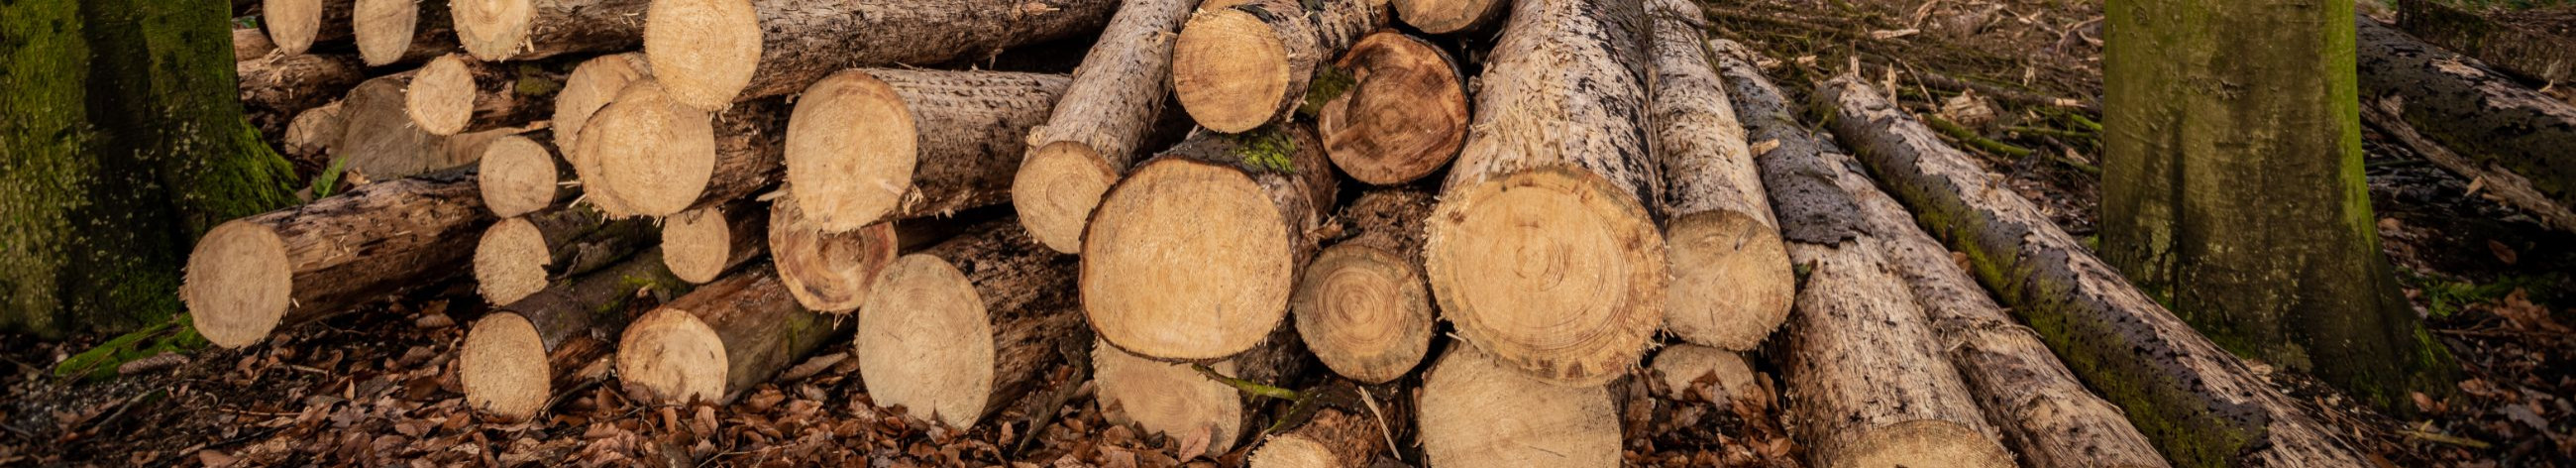 puidu realiseerimine, jätkusuutlikud metsandustavad, kogenud ettevõtjate metsamajandus, raieõiguste müümine, turundusstrateegiad, metsateatise esitamine, metsamajandusalane nõustamine, registreeritud kinnisasja müük, raieõigused, läbipaistev hinnakujundus